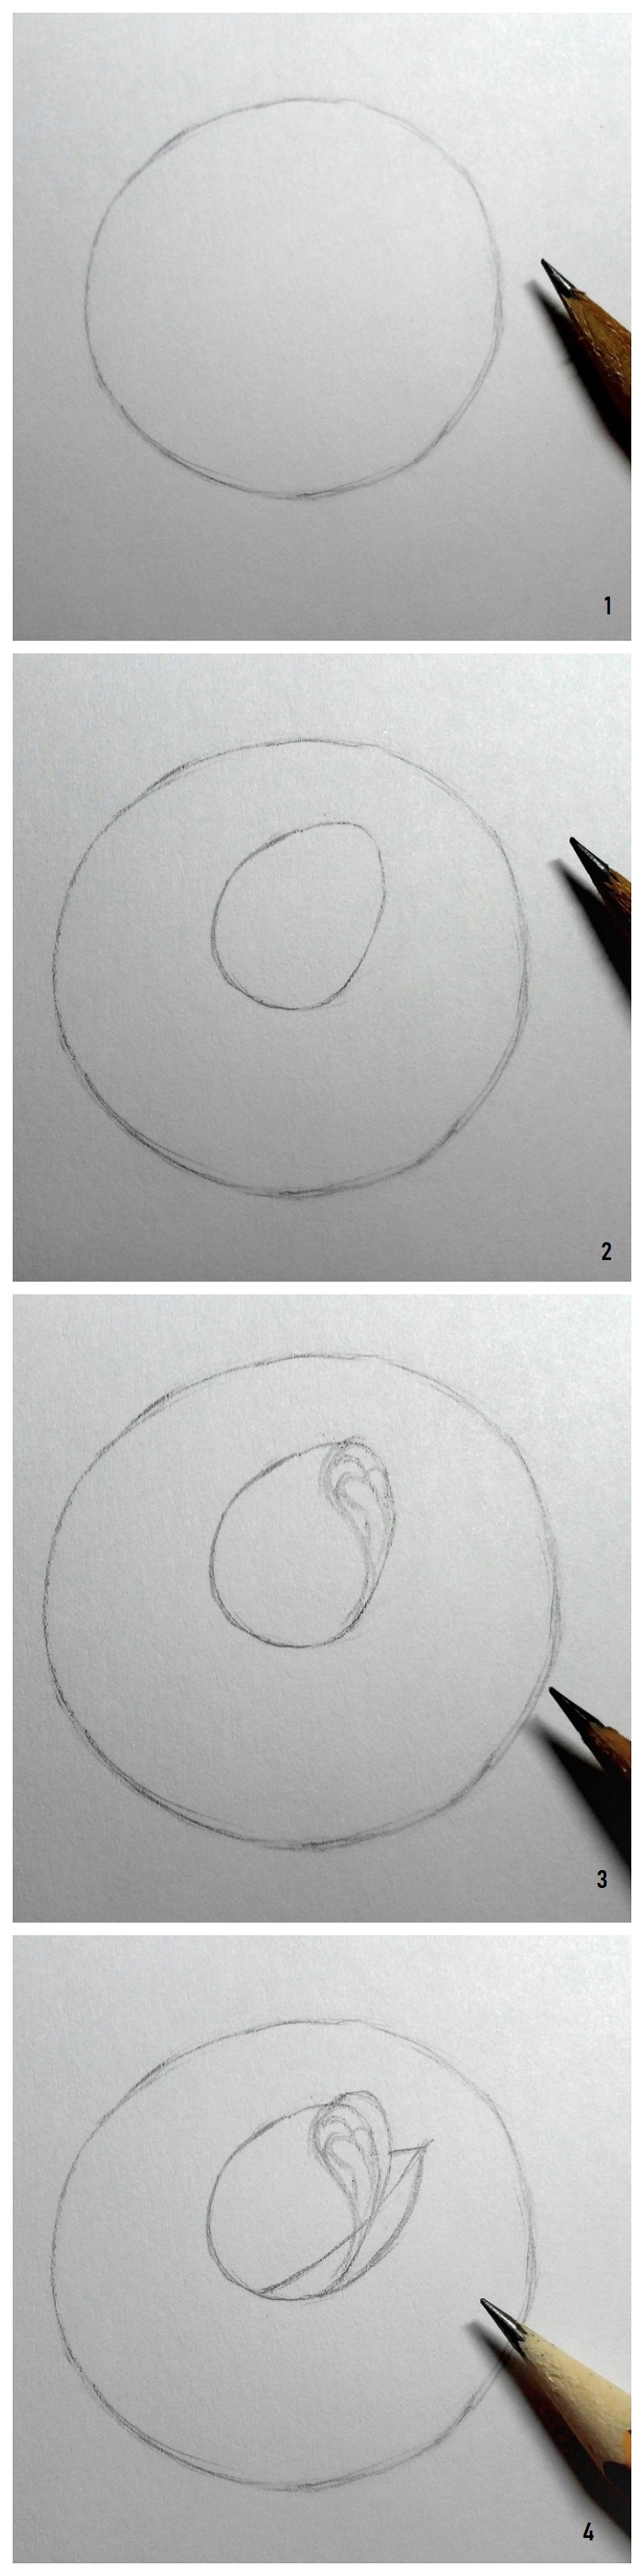 Fiori facili da disegnare, tutorial per disegnare una rosa